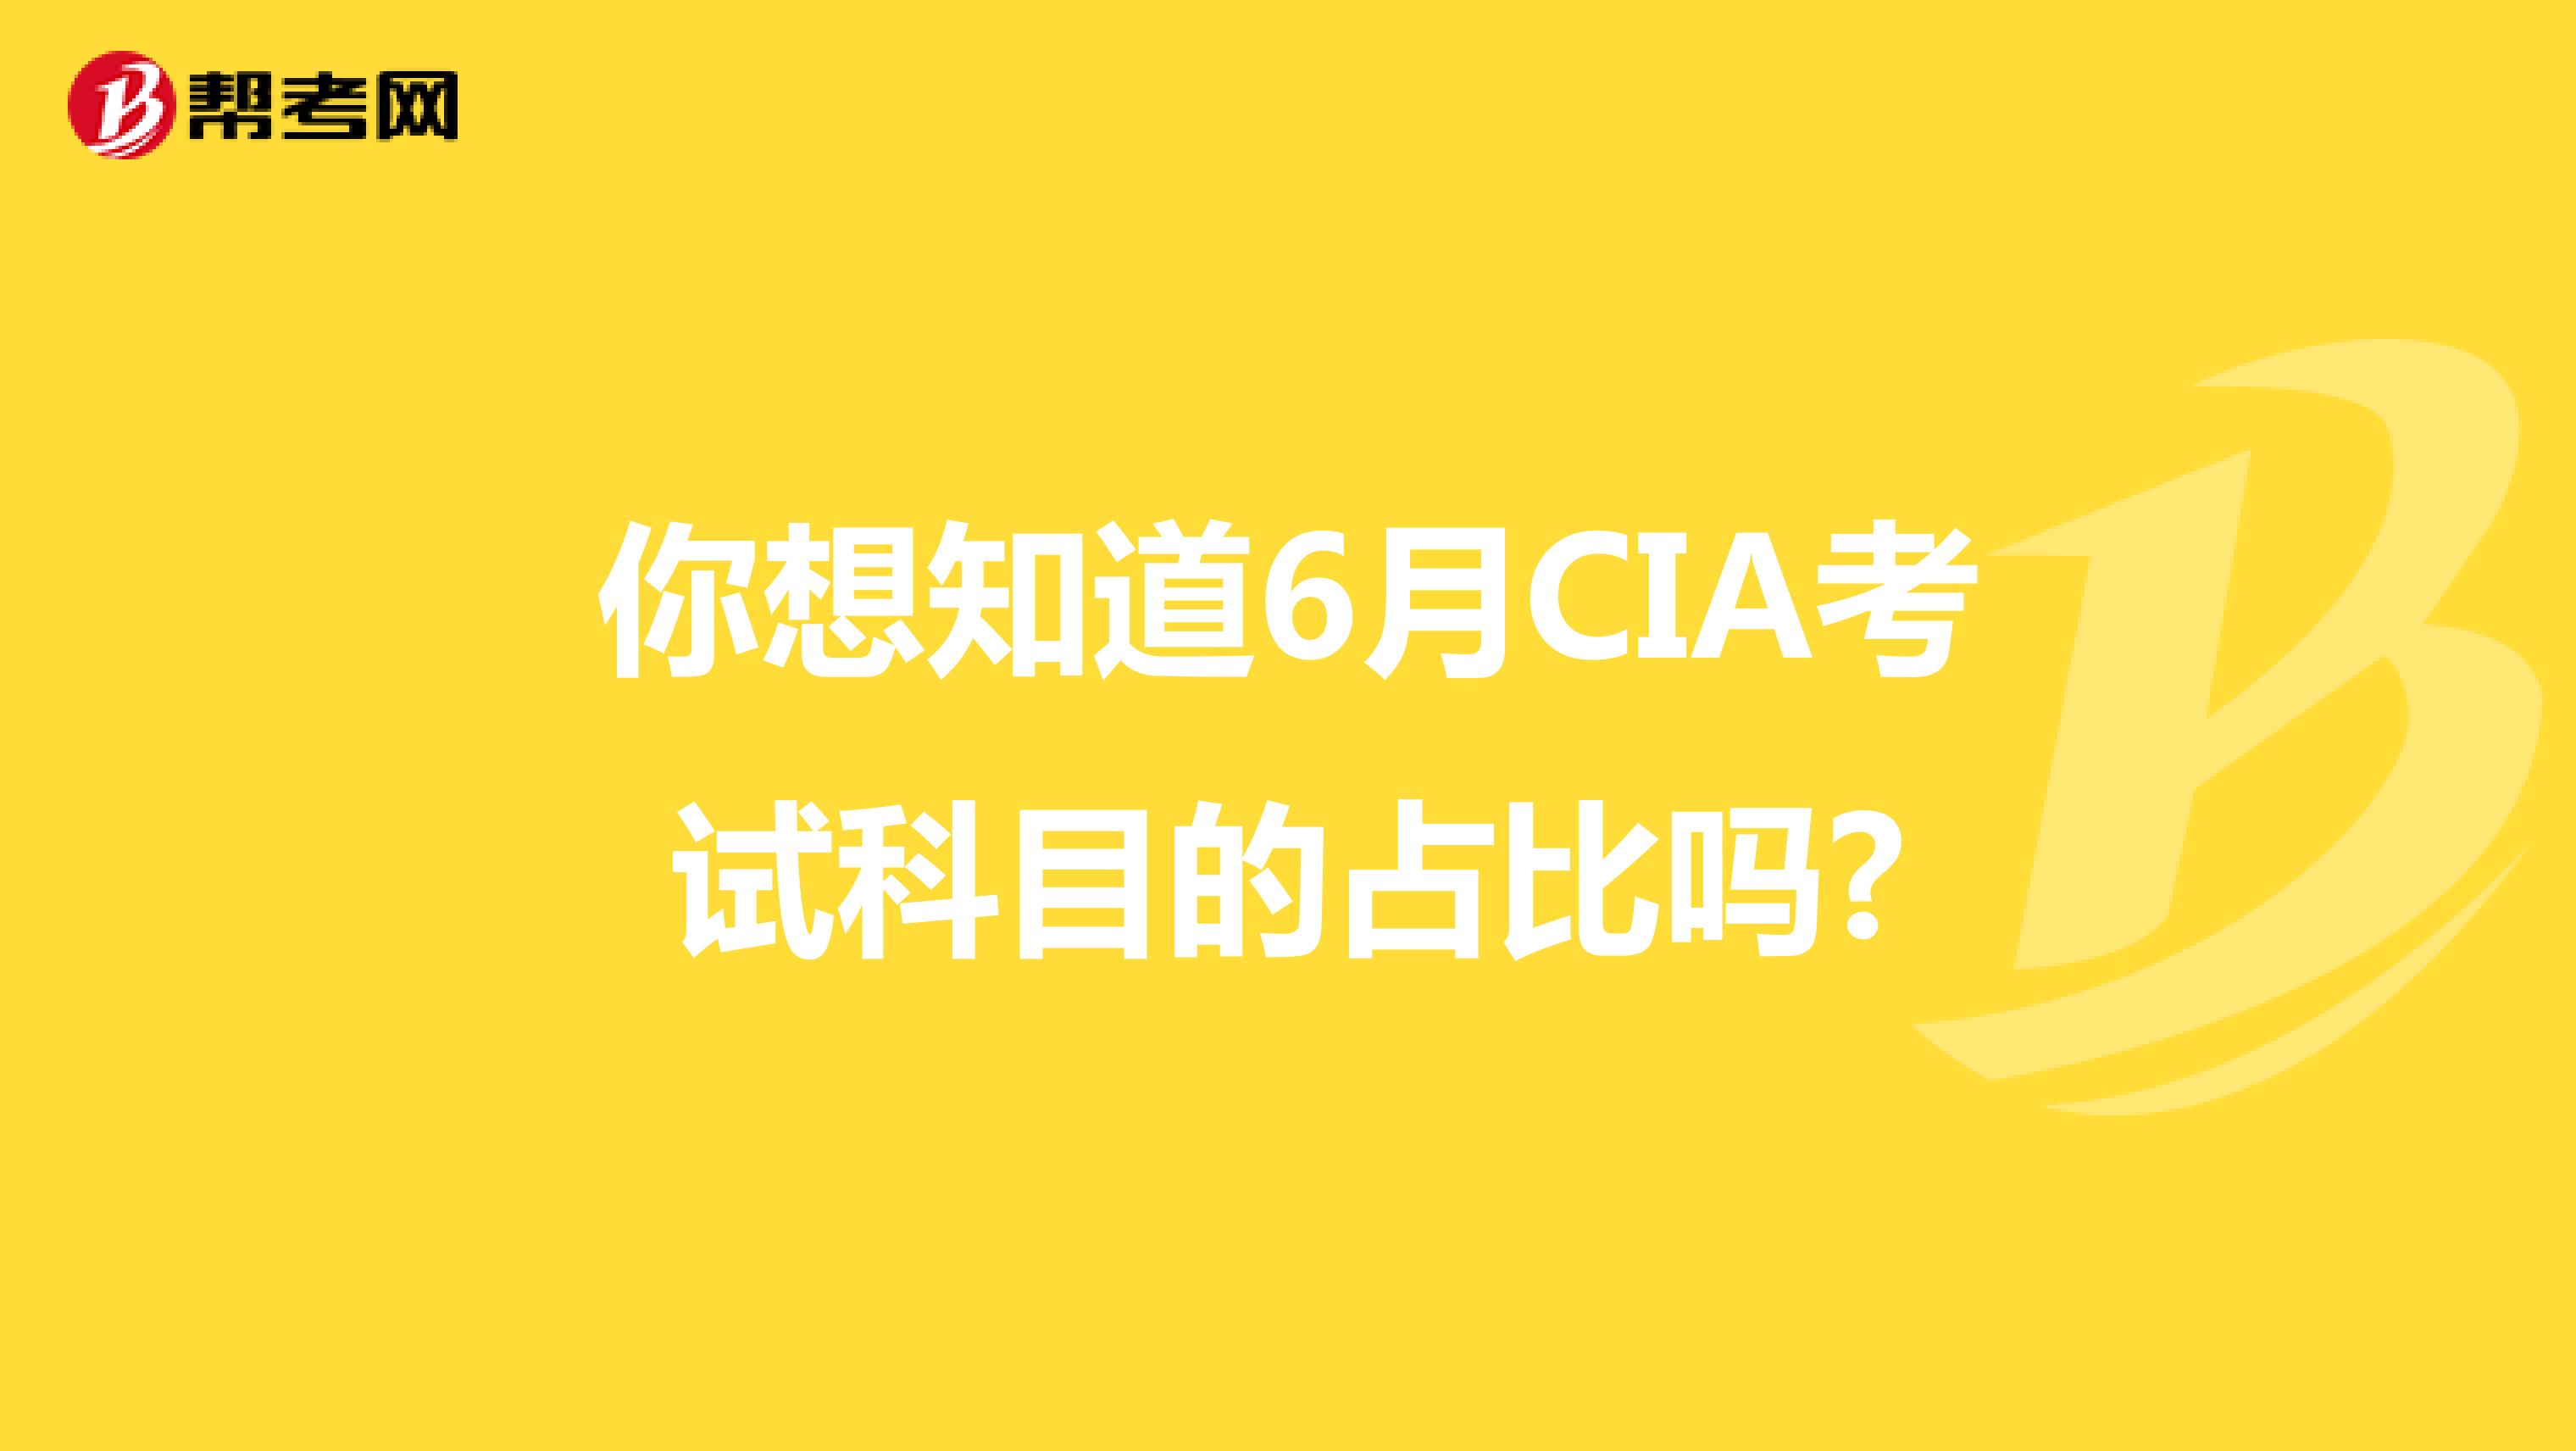 你想知道6月CIA考试科目的占比吗?